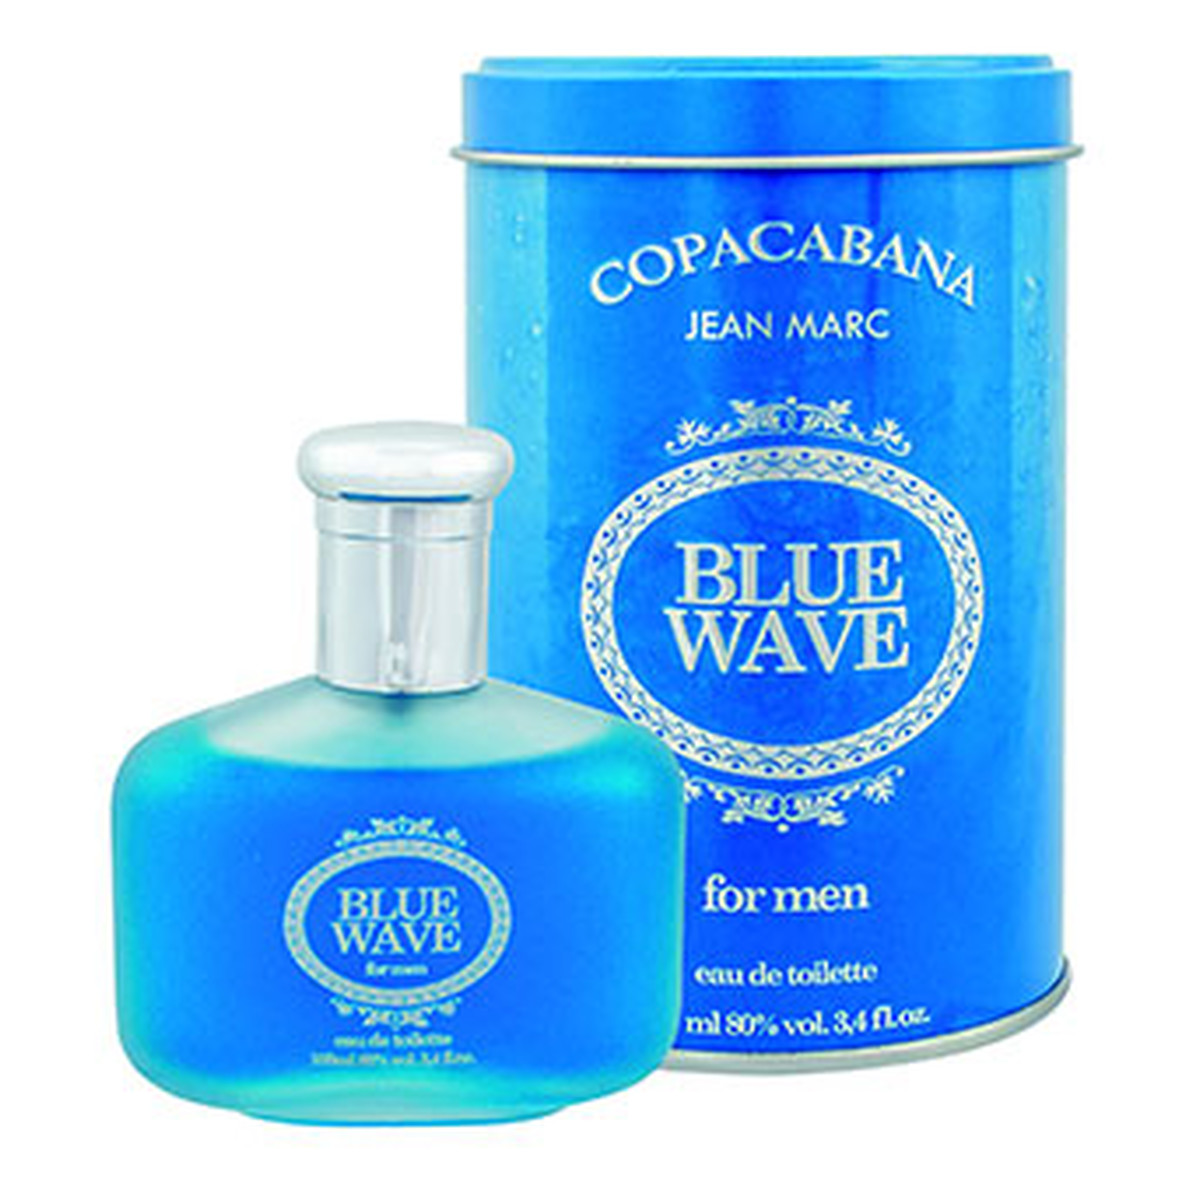 Jean Marc Copacabana Blue Wave Woda toaletowa 100ml